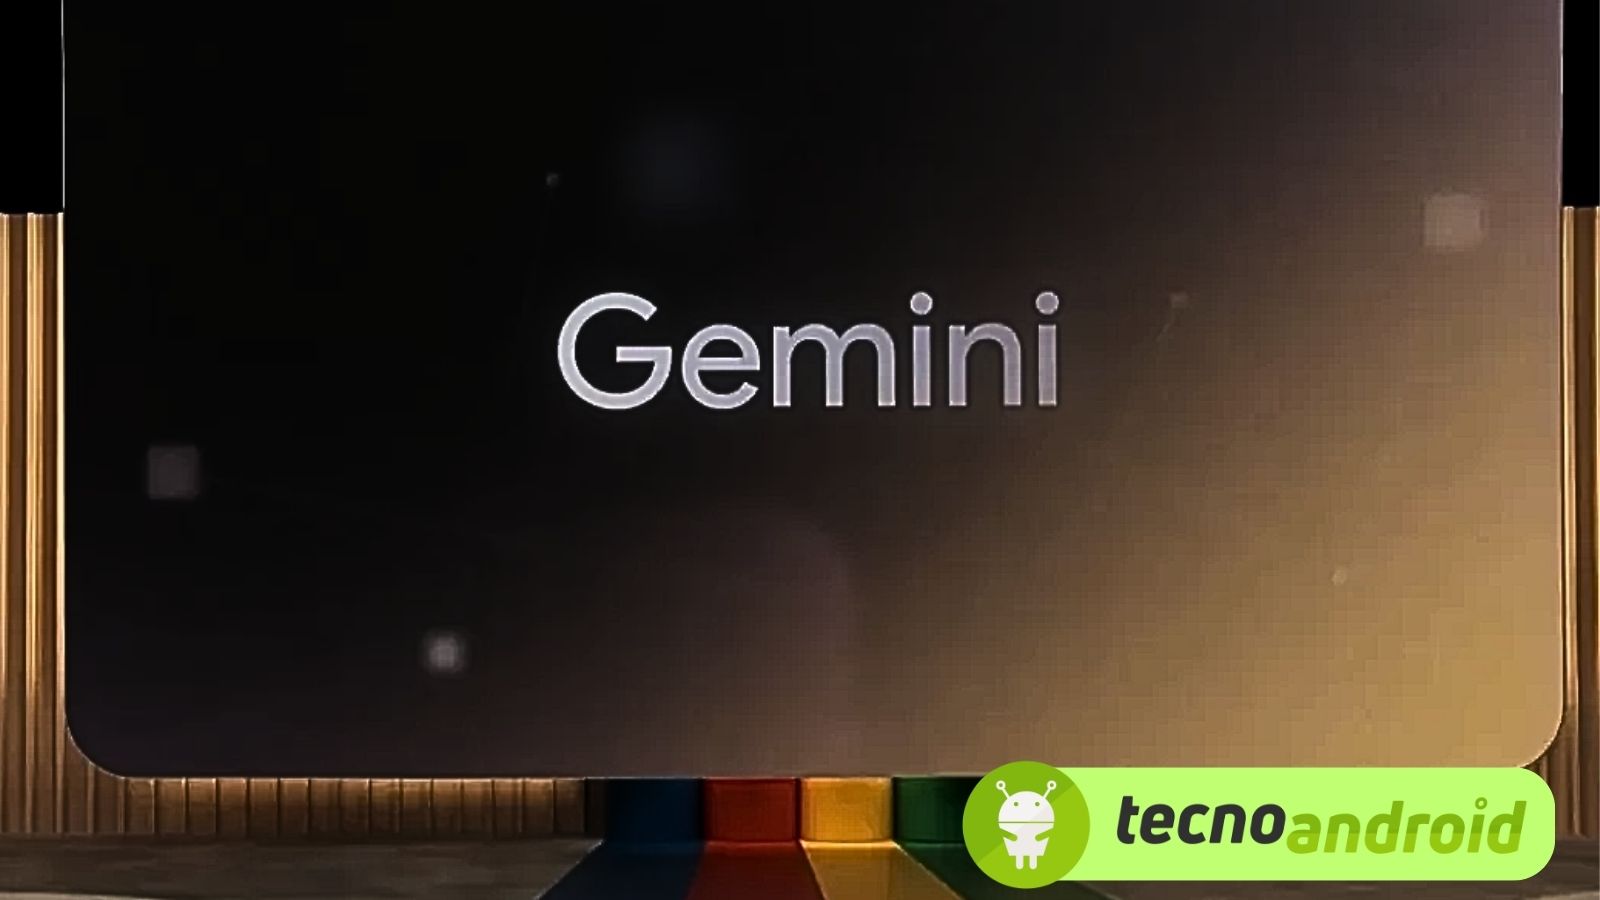 Google Gemini diventa un vero amico AI che gioca con noi